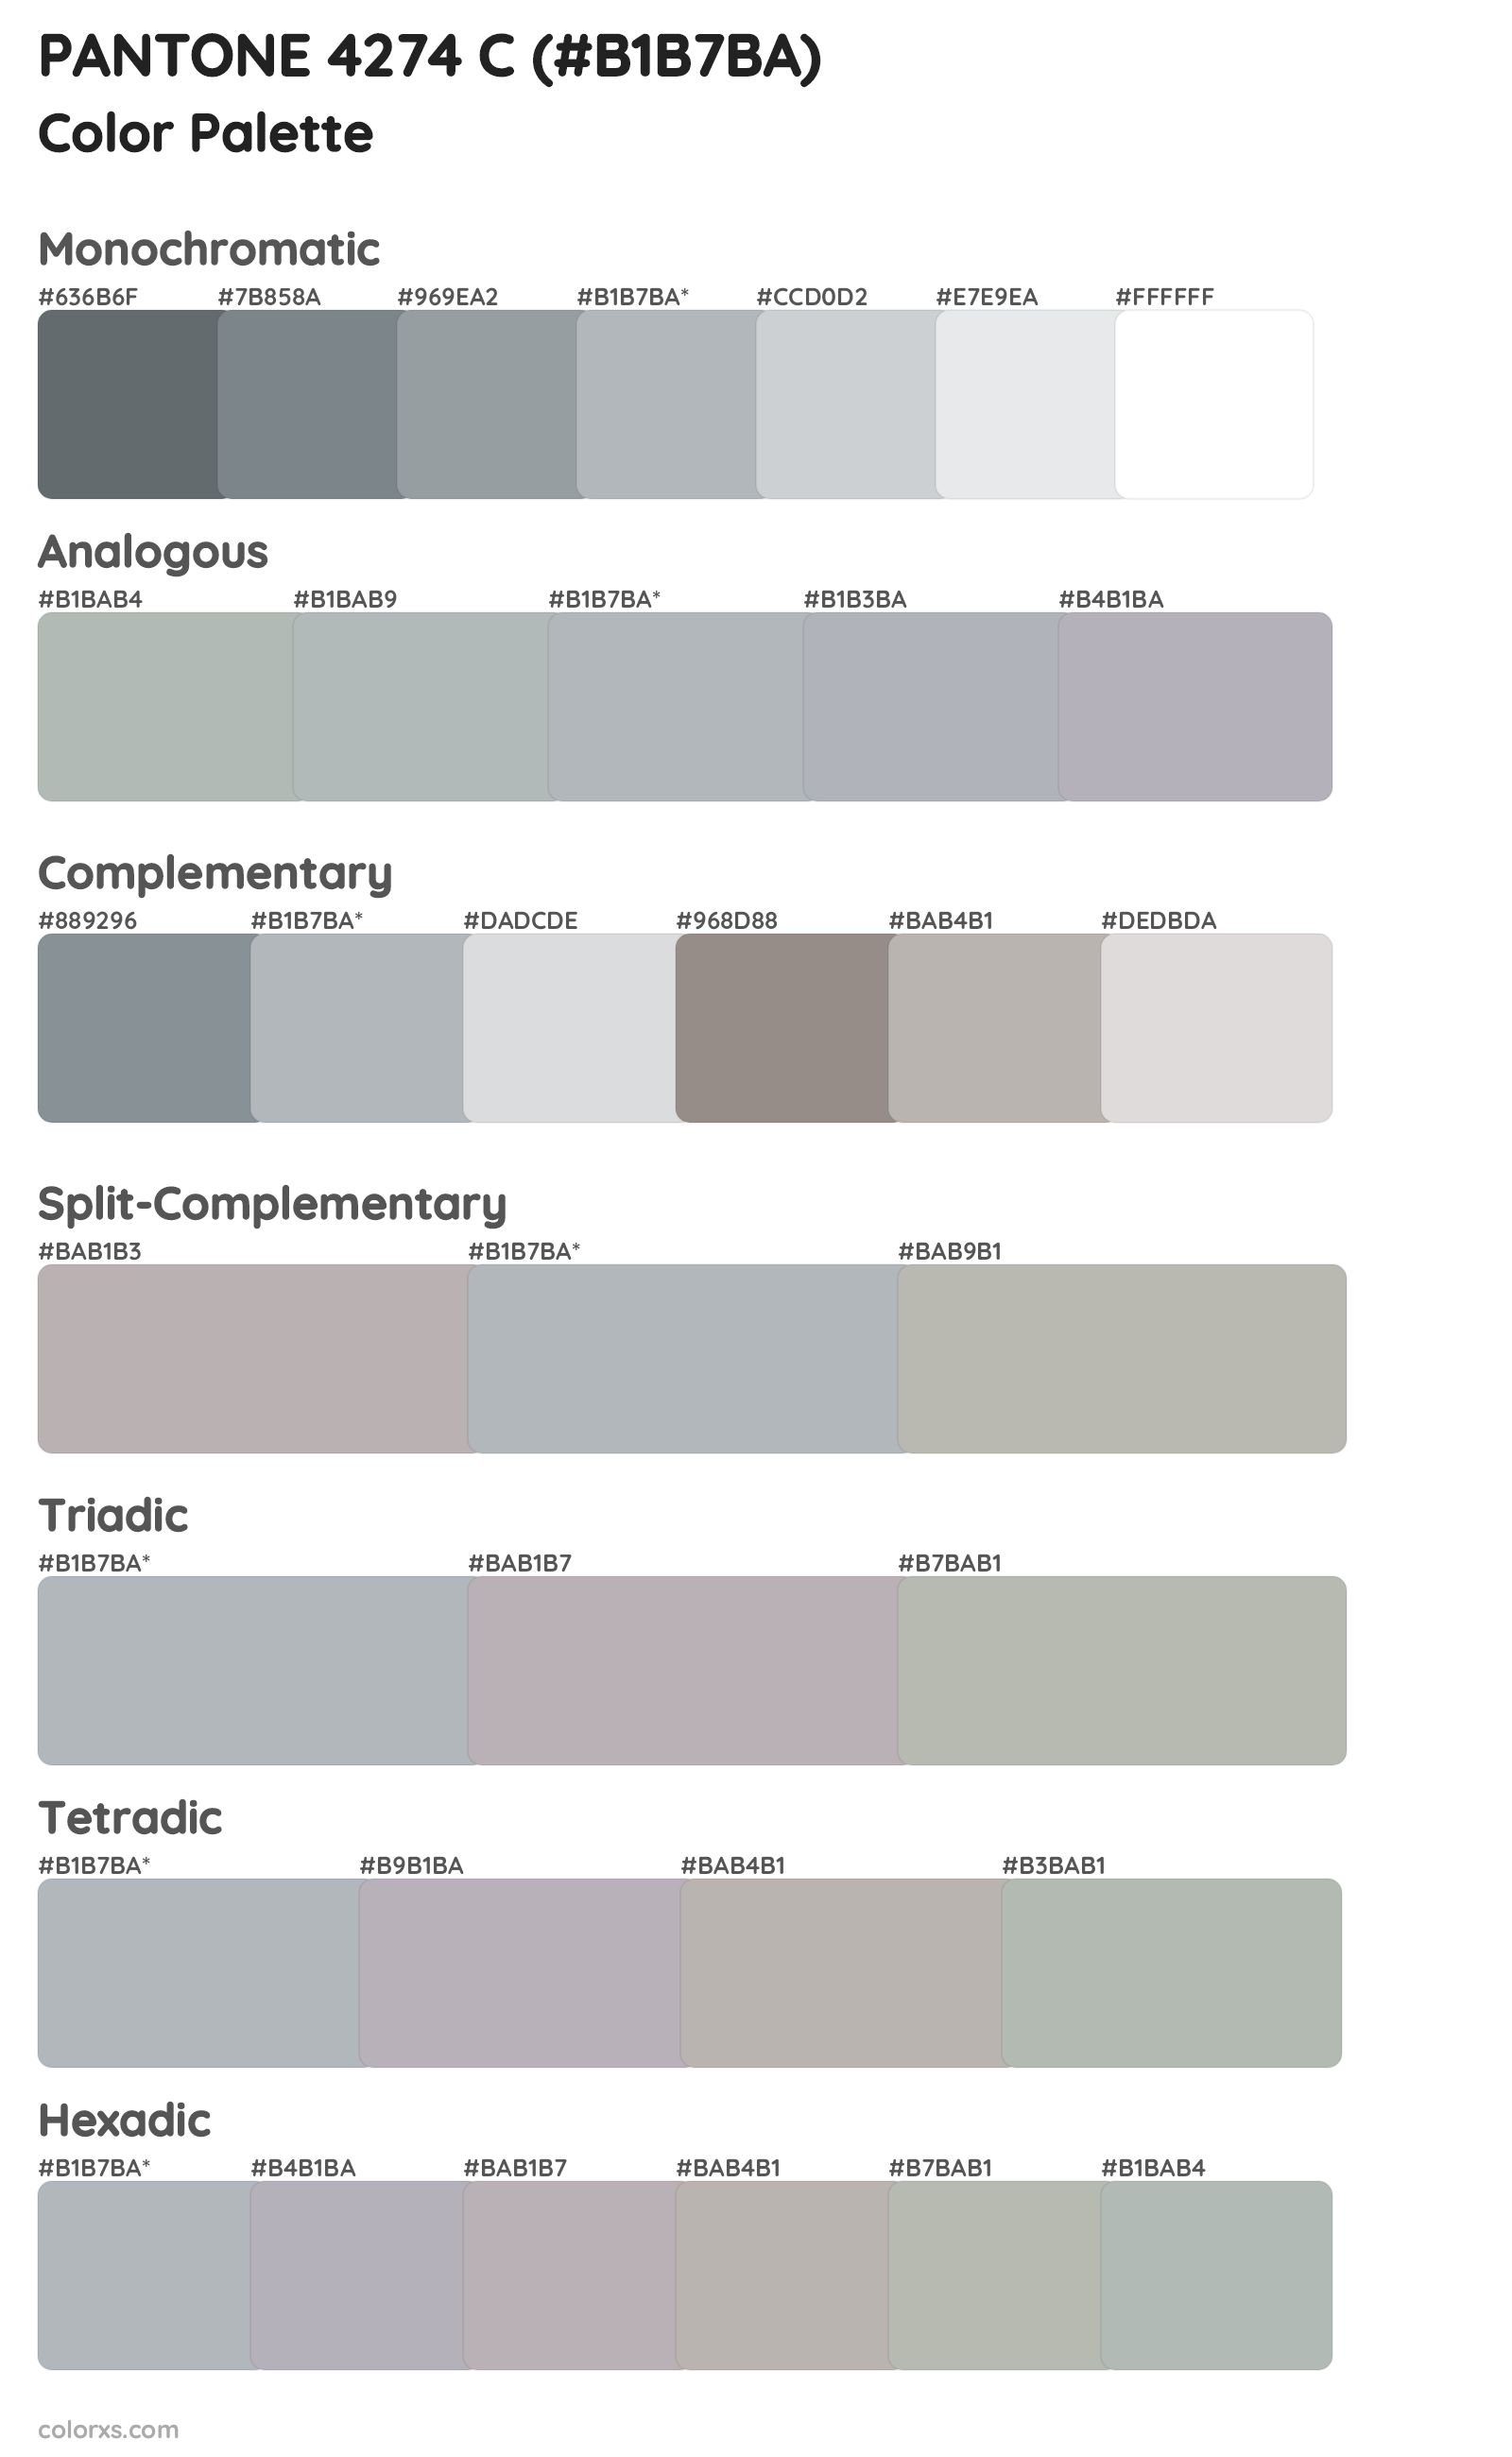 PANTONE 4274 C Color Scheme Palettes